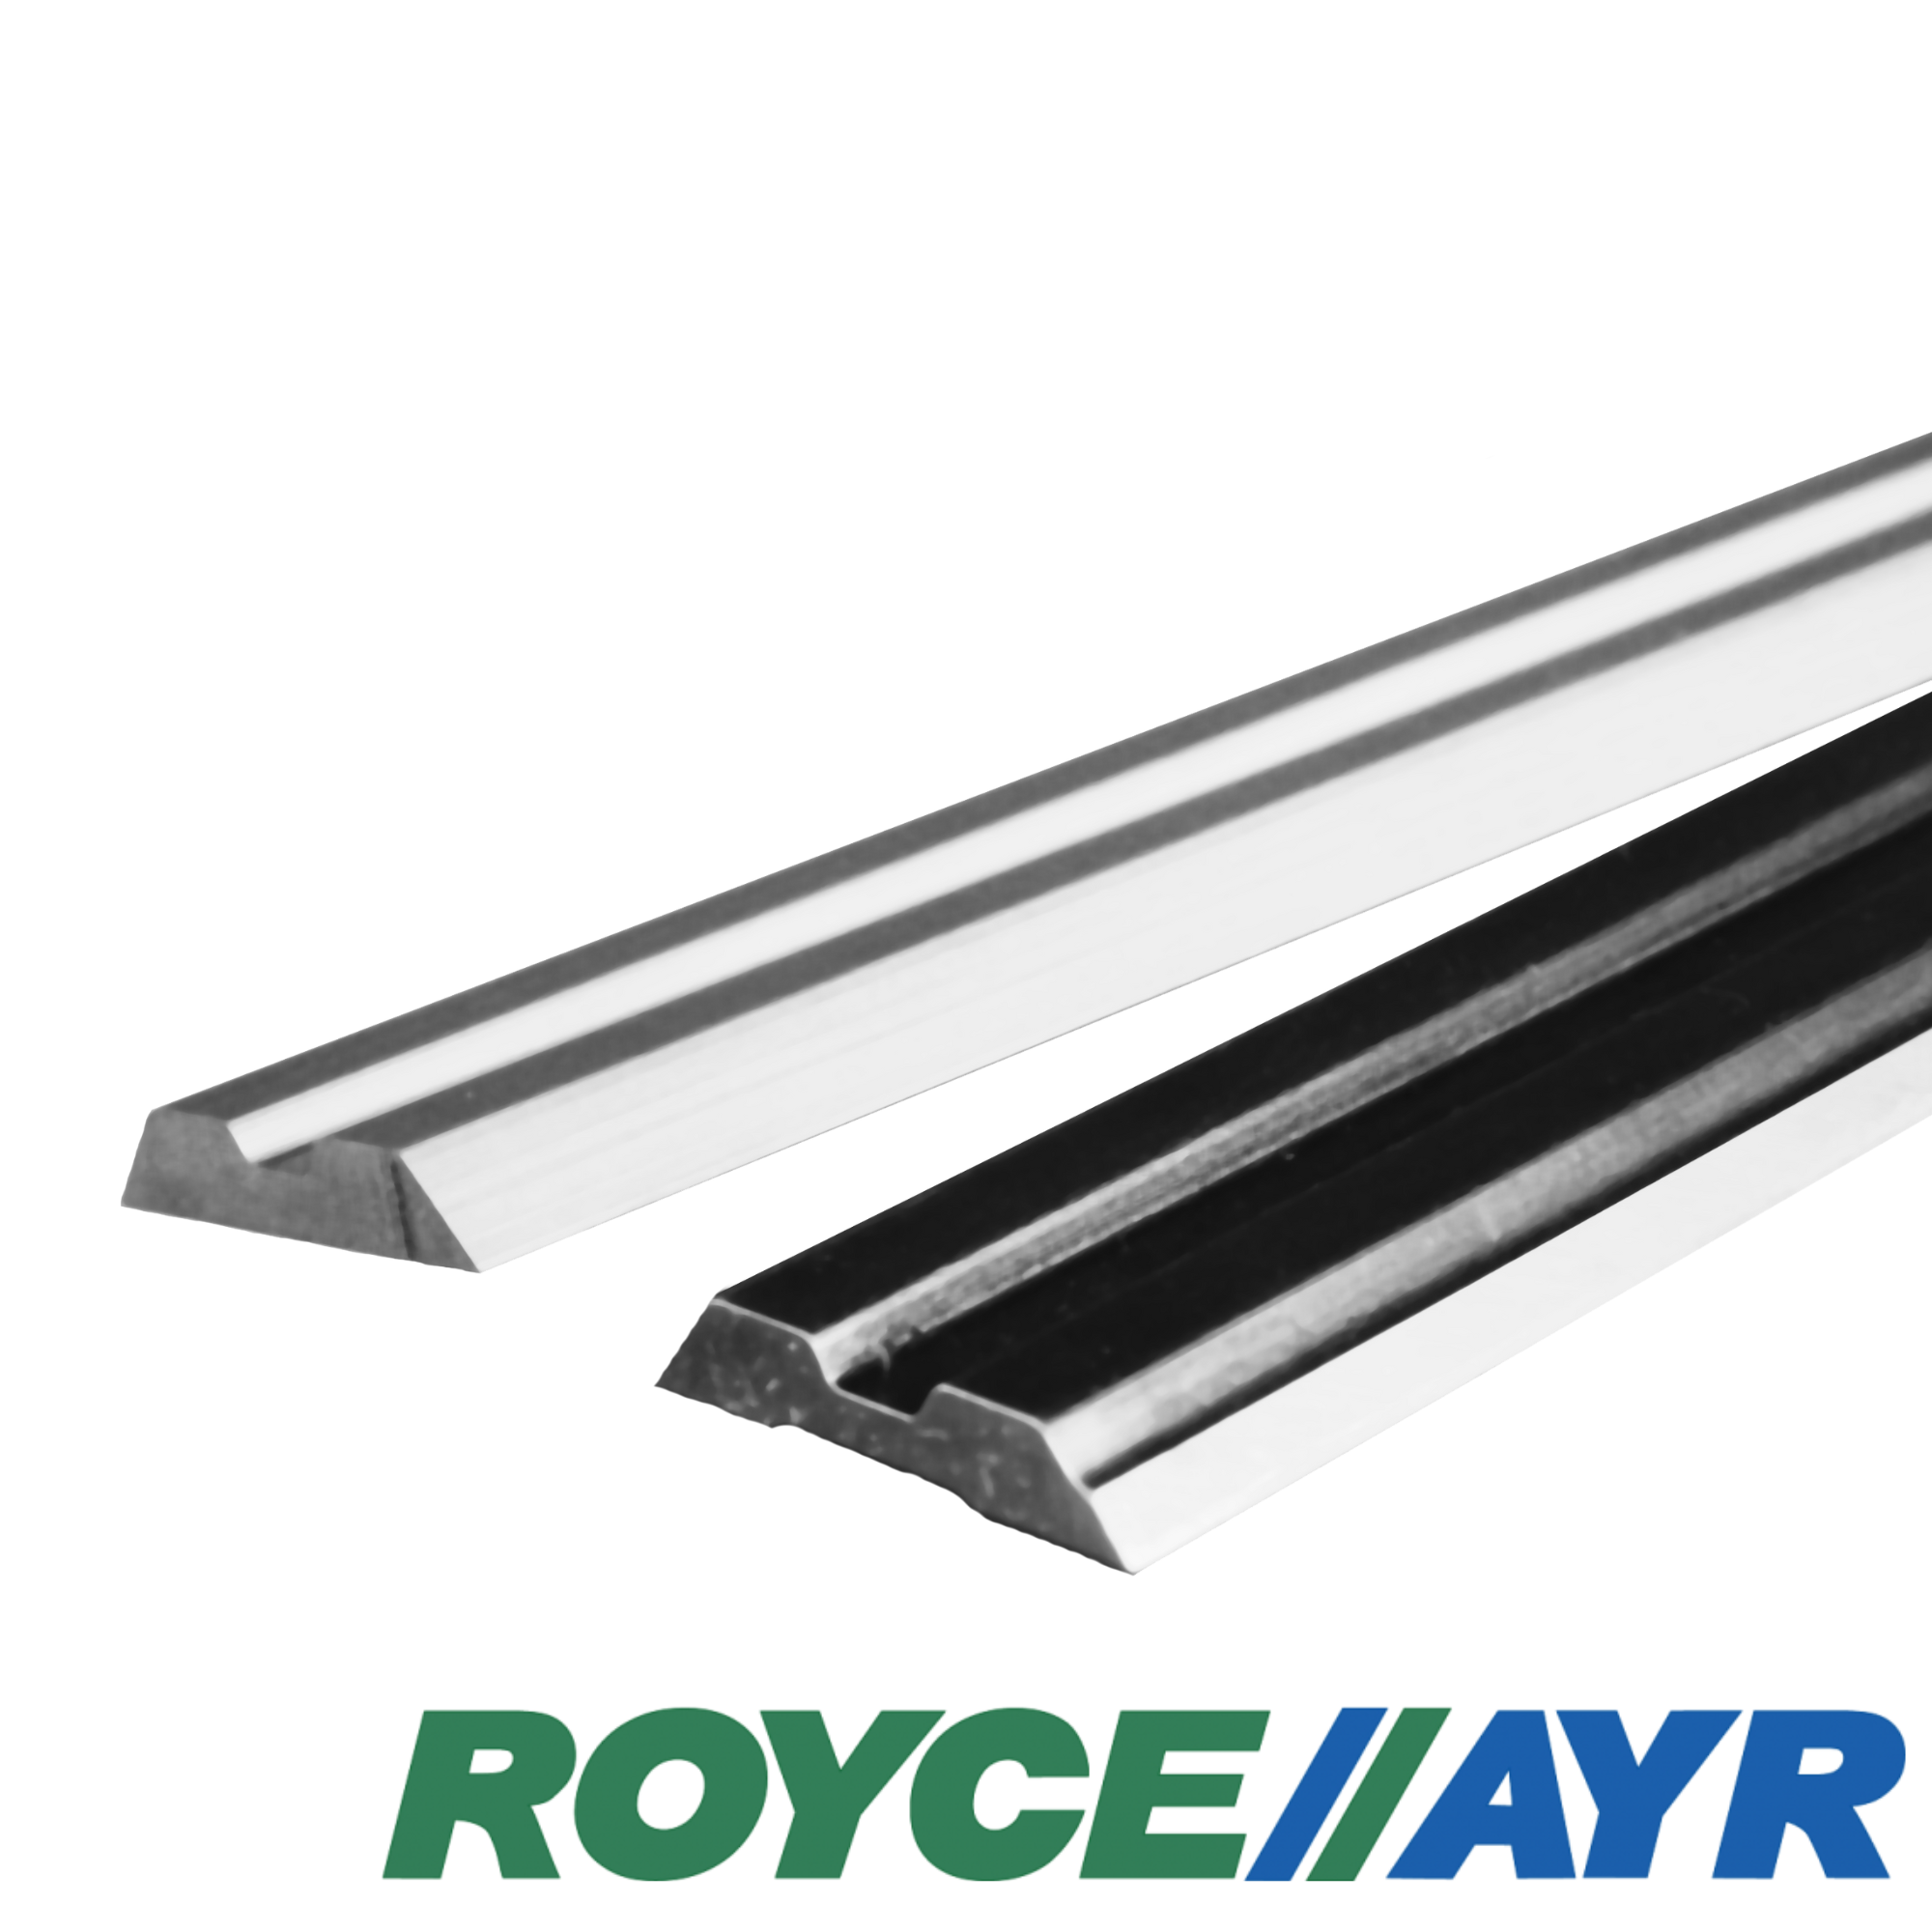 Royce//Ayr - Centroloc HSS | Product